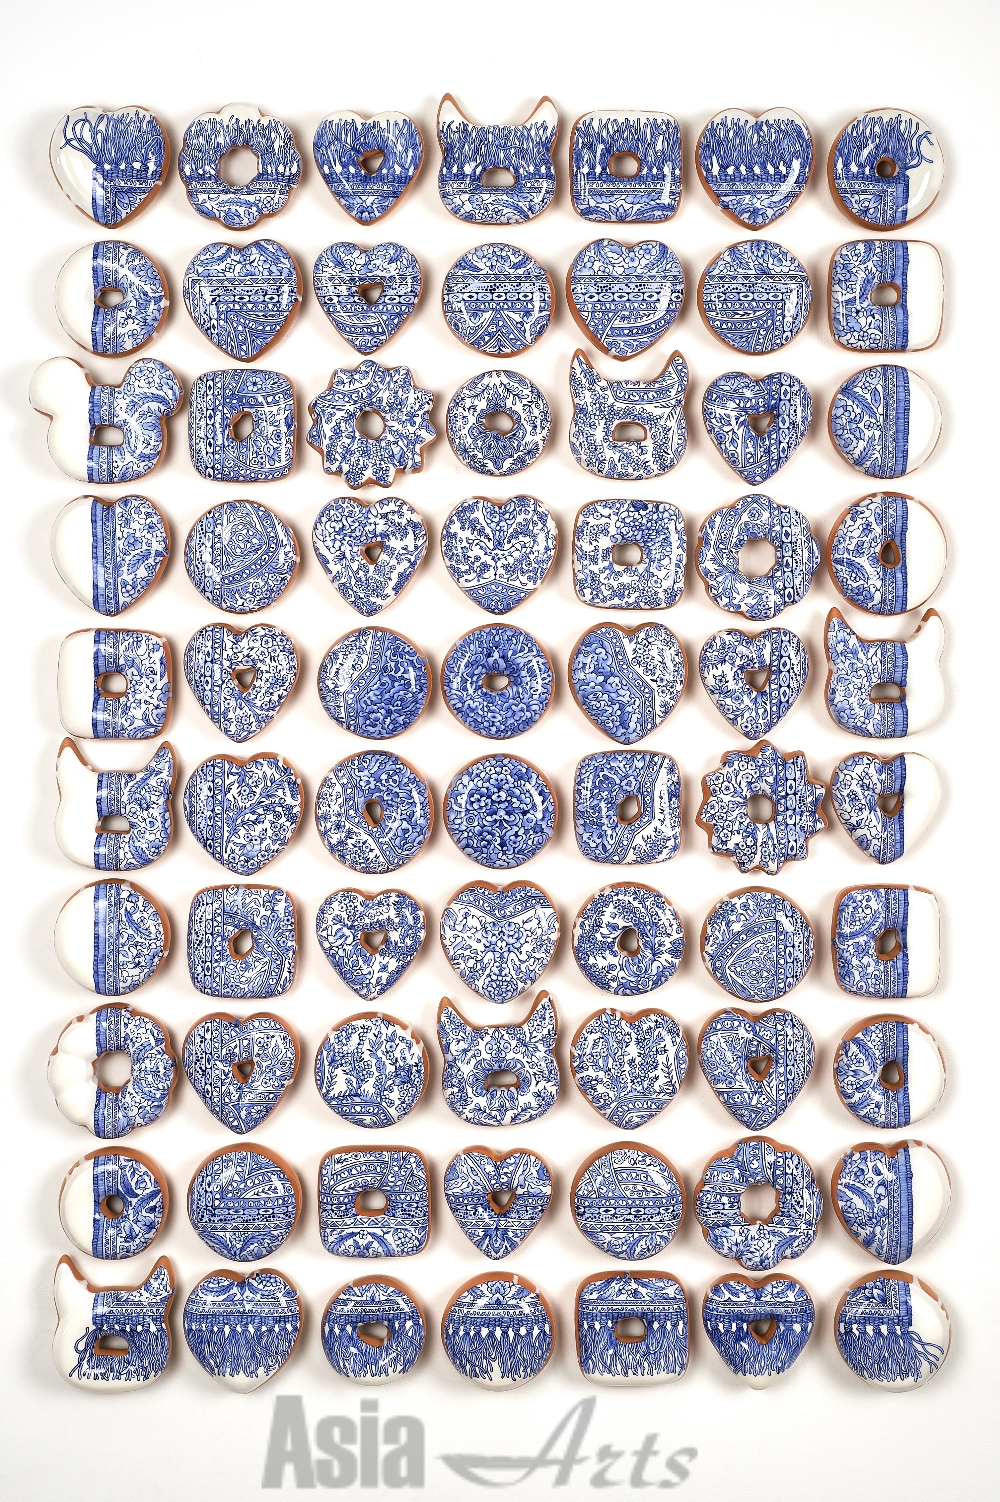 김재용, 청화새를 찾는 중 Finding Blue and White Bird, 2018, 세라믹, 언더글레이즈, 산화 코발트, 유약 Ceramic, under glaze, cobalt oxide, glaze, 119x82x3.8(d)cm / 사진=Courtesy of artist, 학고재 